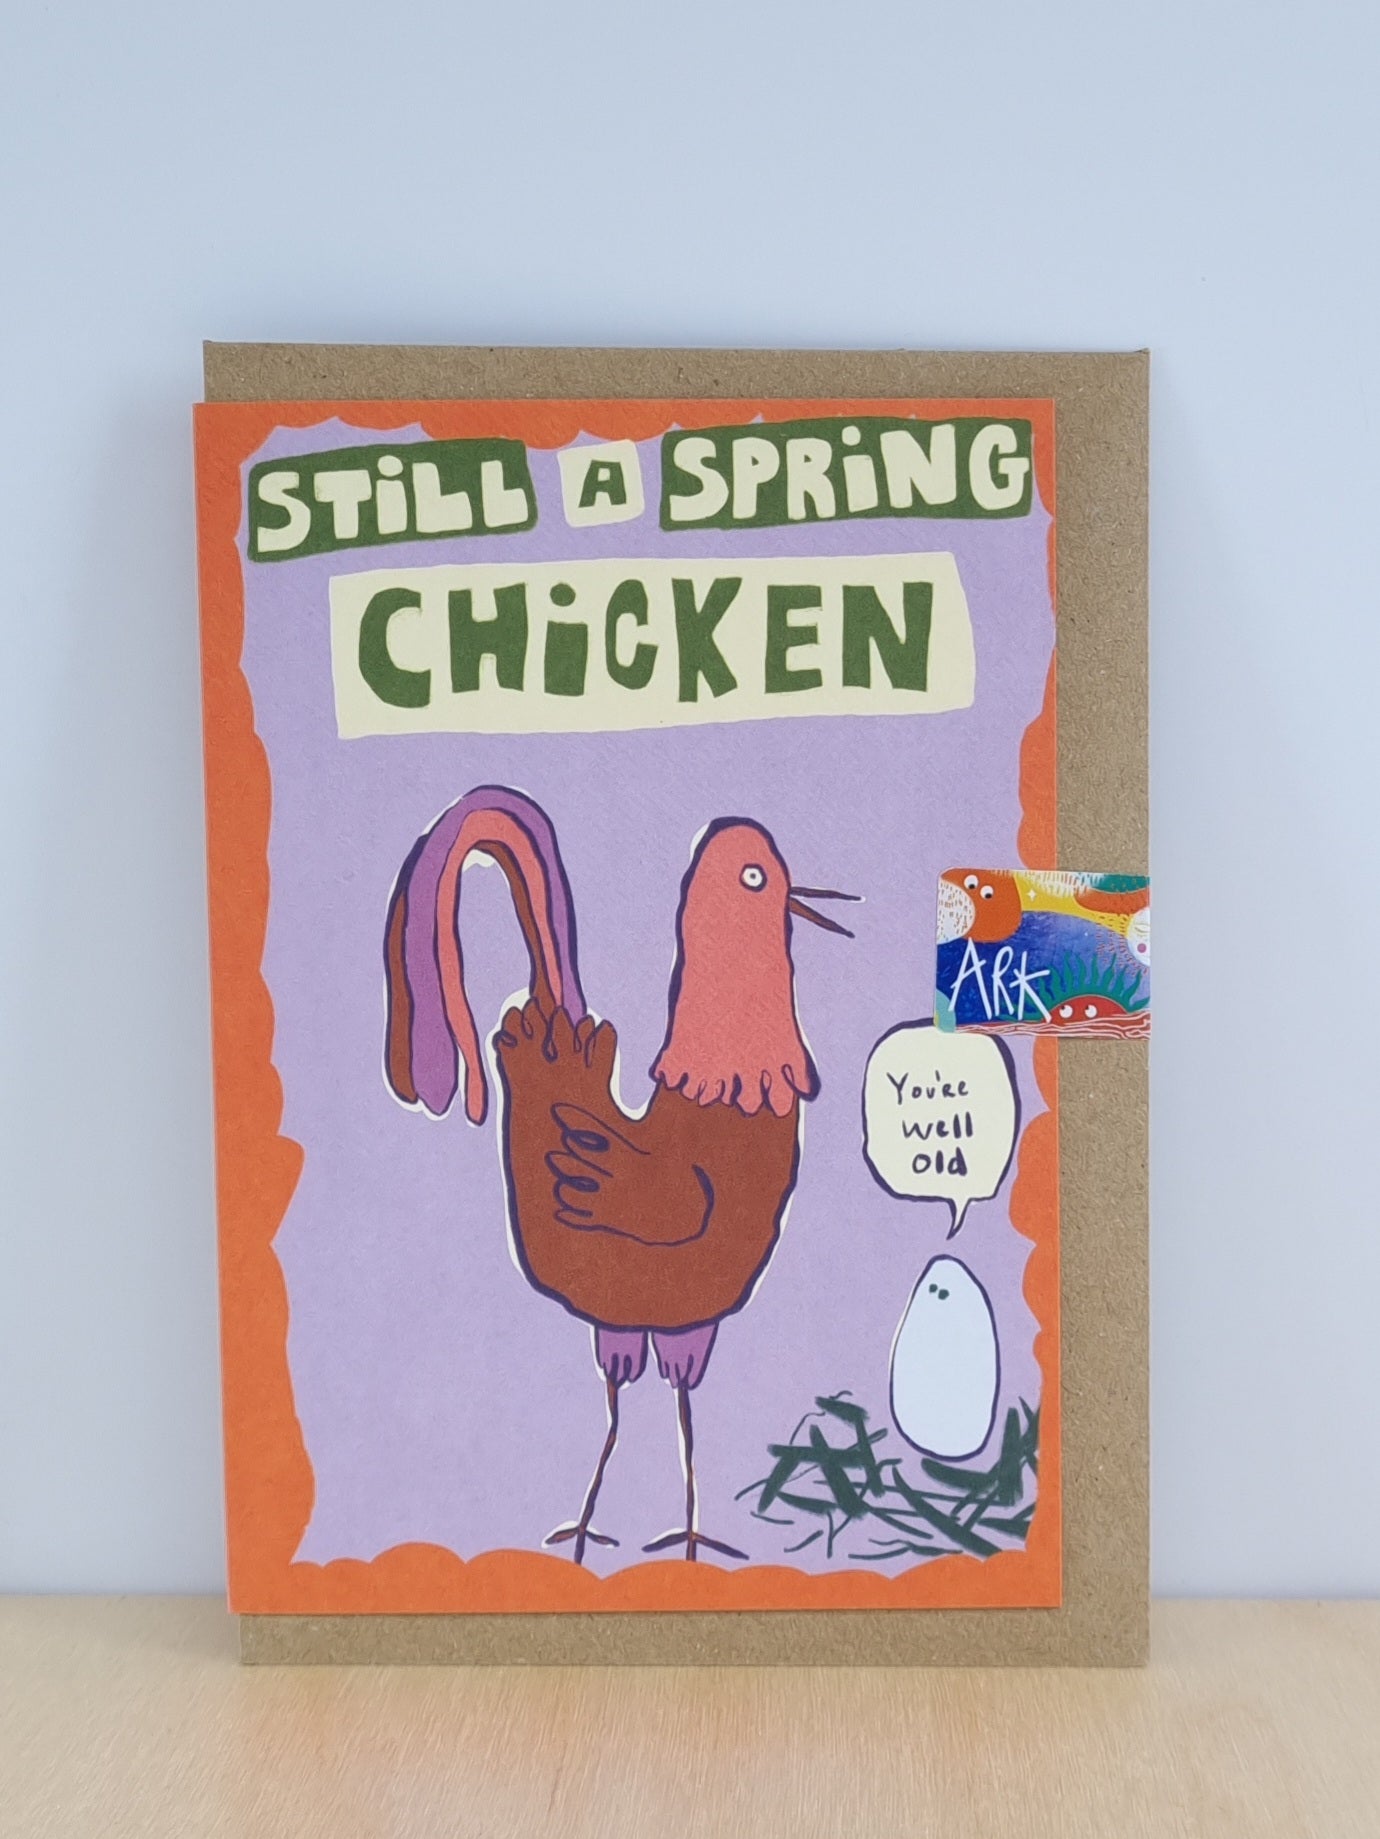 Still a spring chicken card